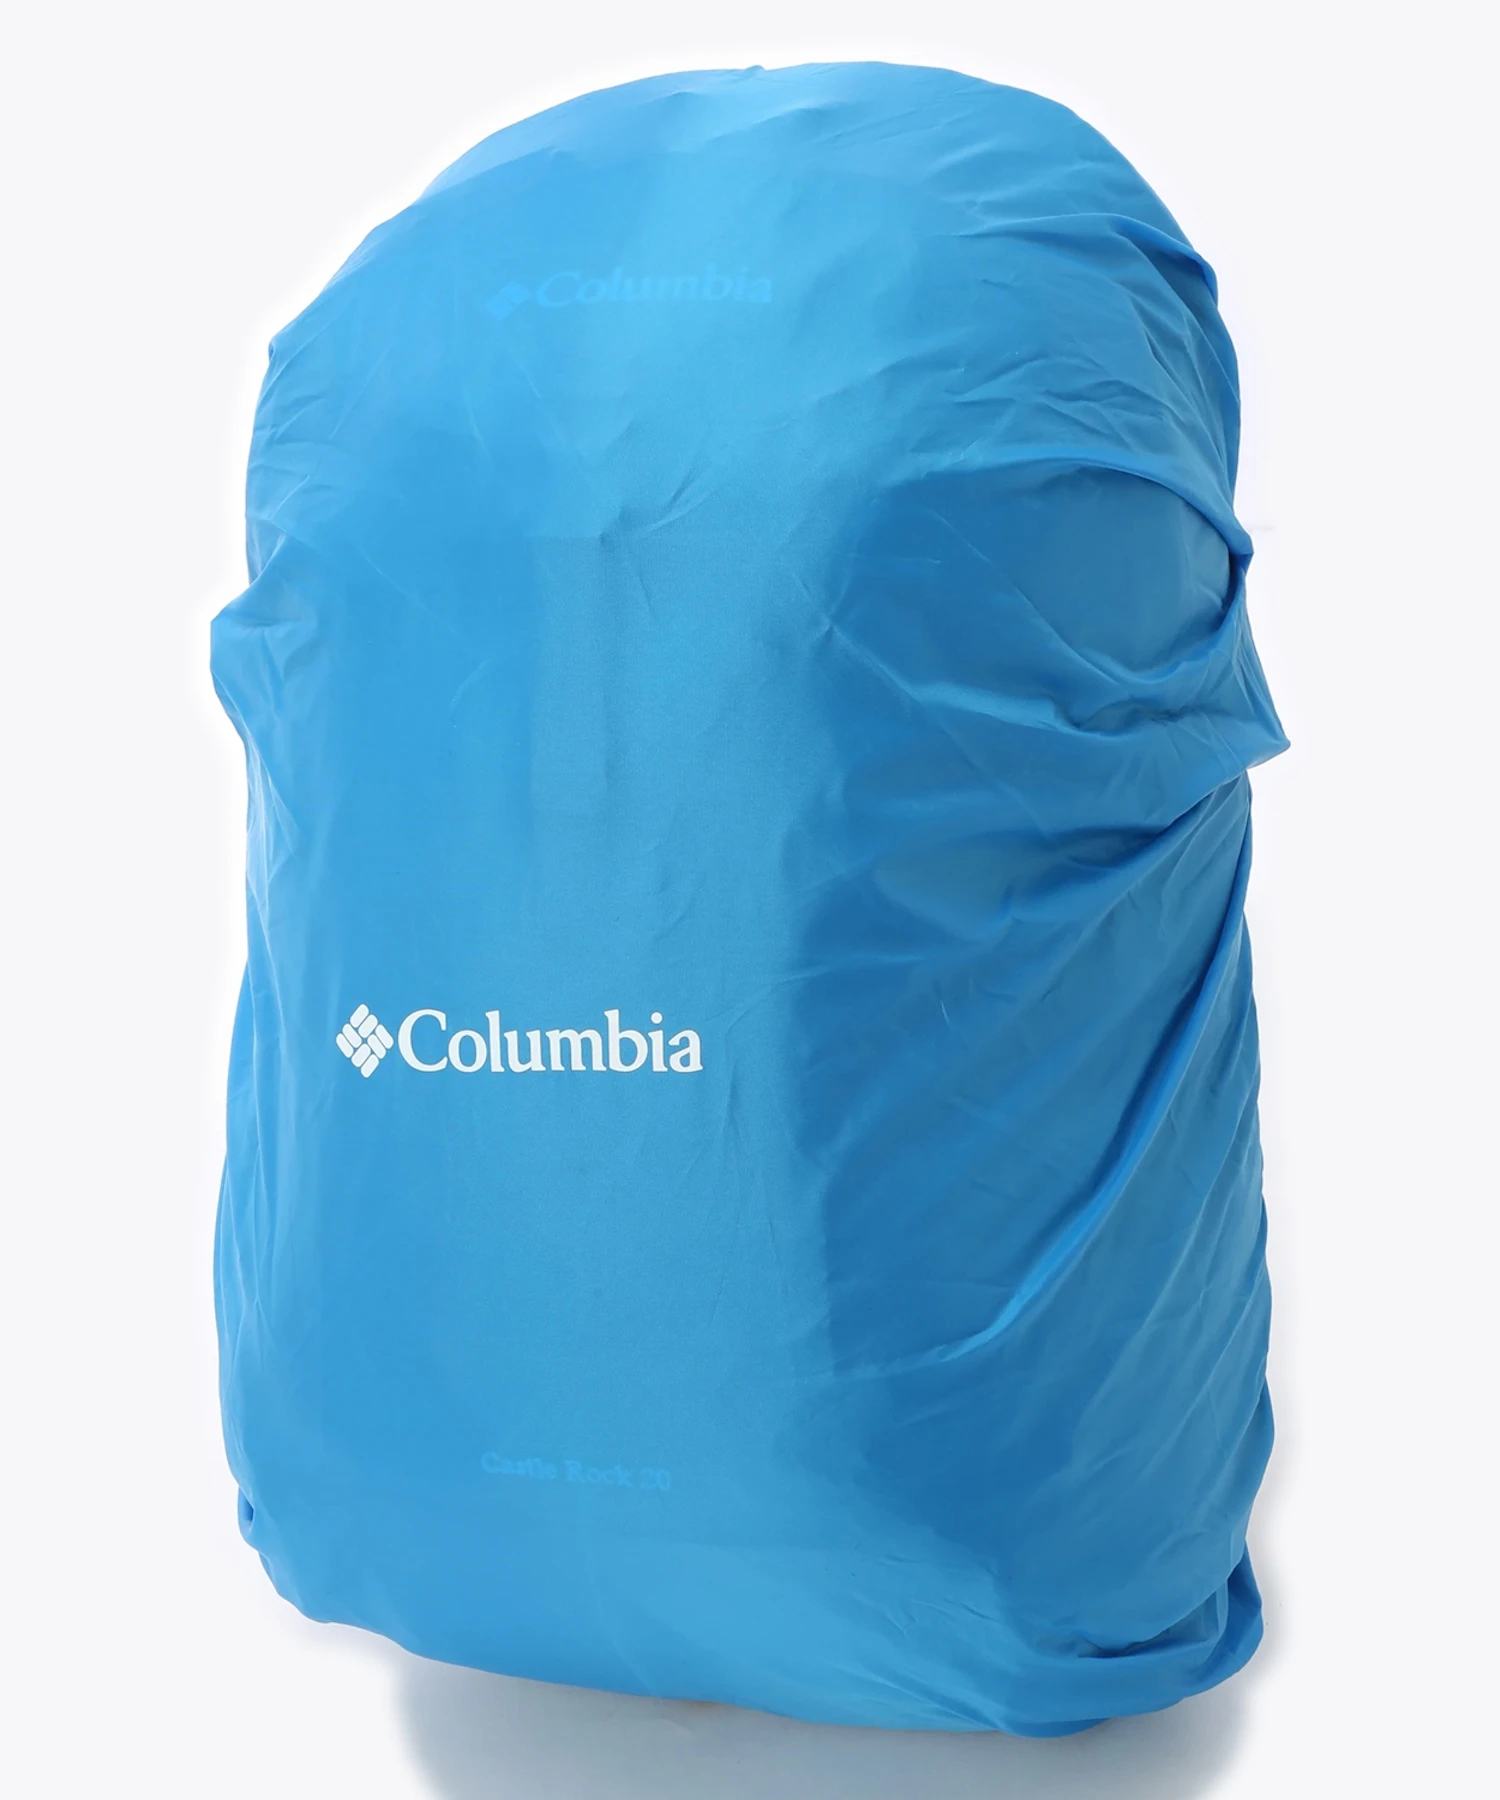 標準装備されているレインカバーは、バックパック本体のカラーに関わらず「コロンビア」を象徴するブルー